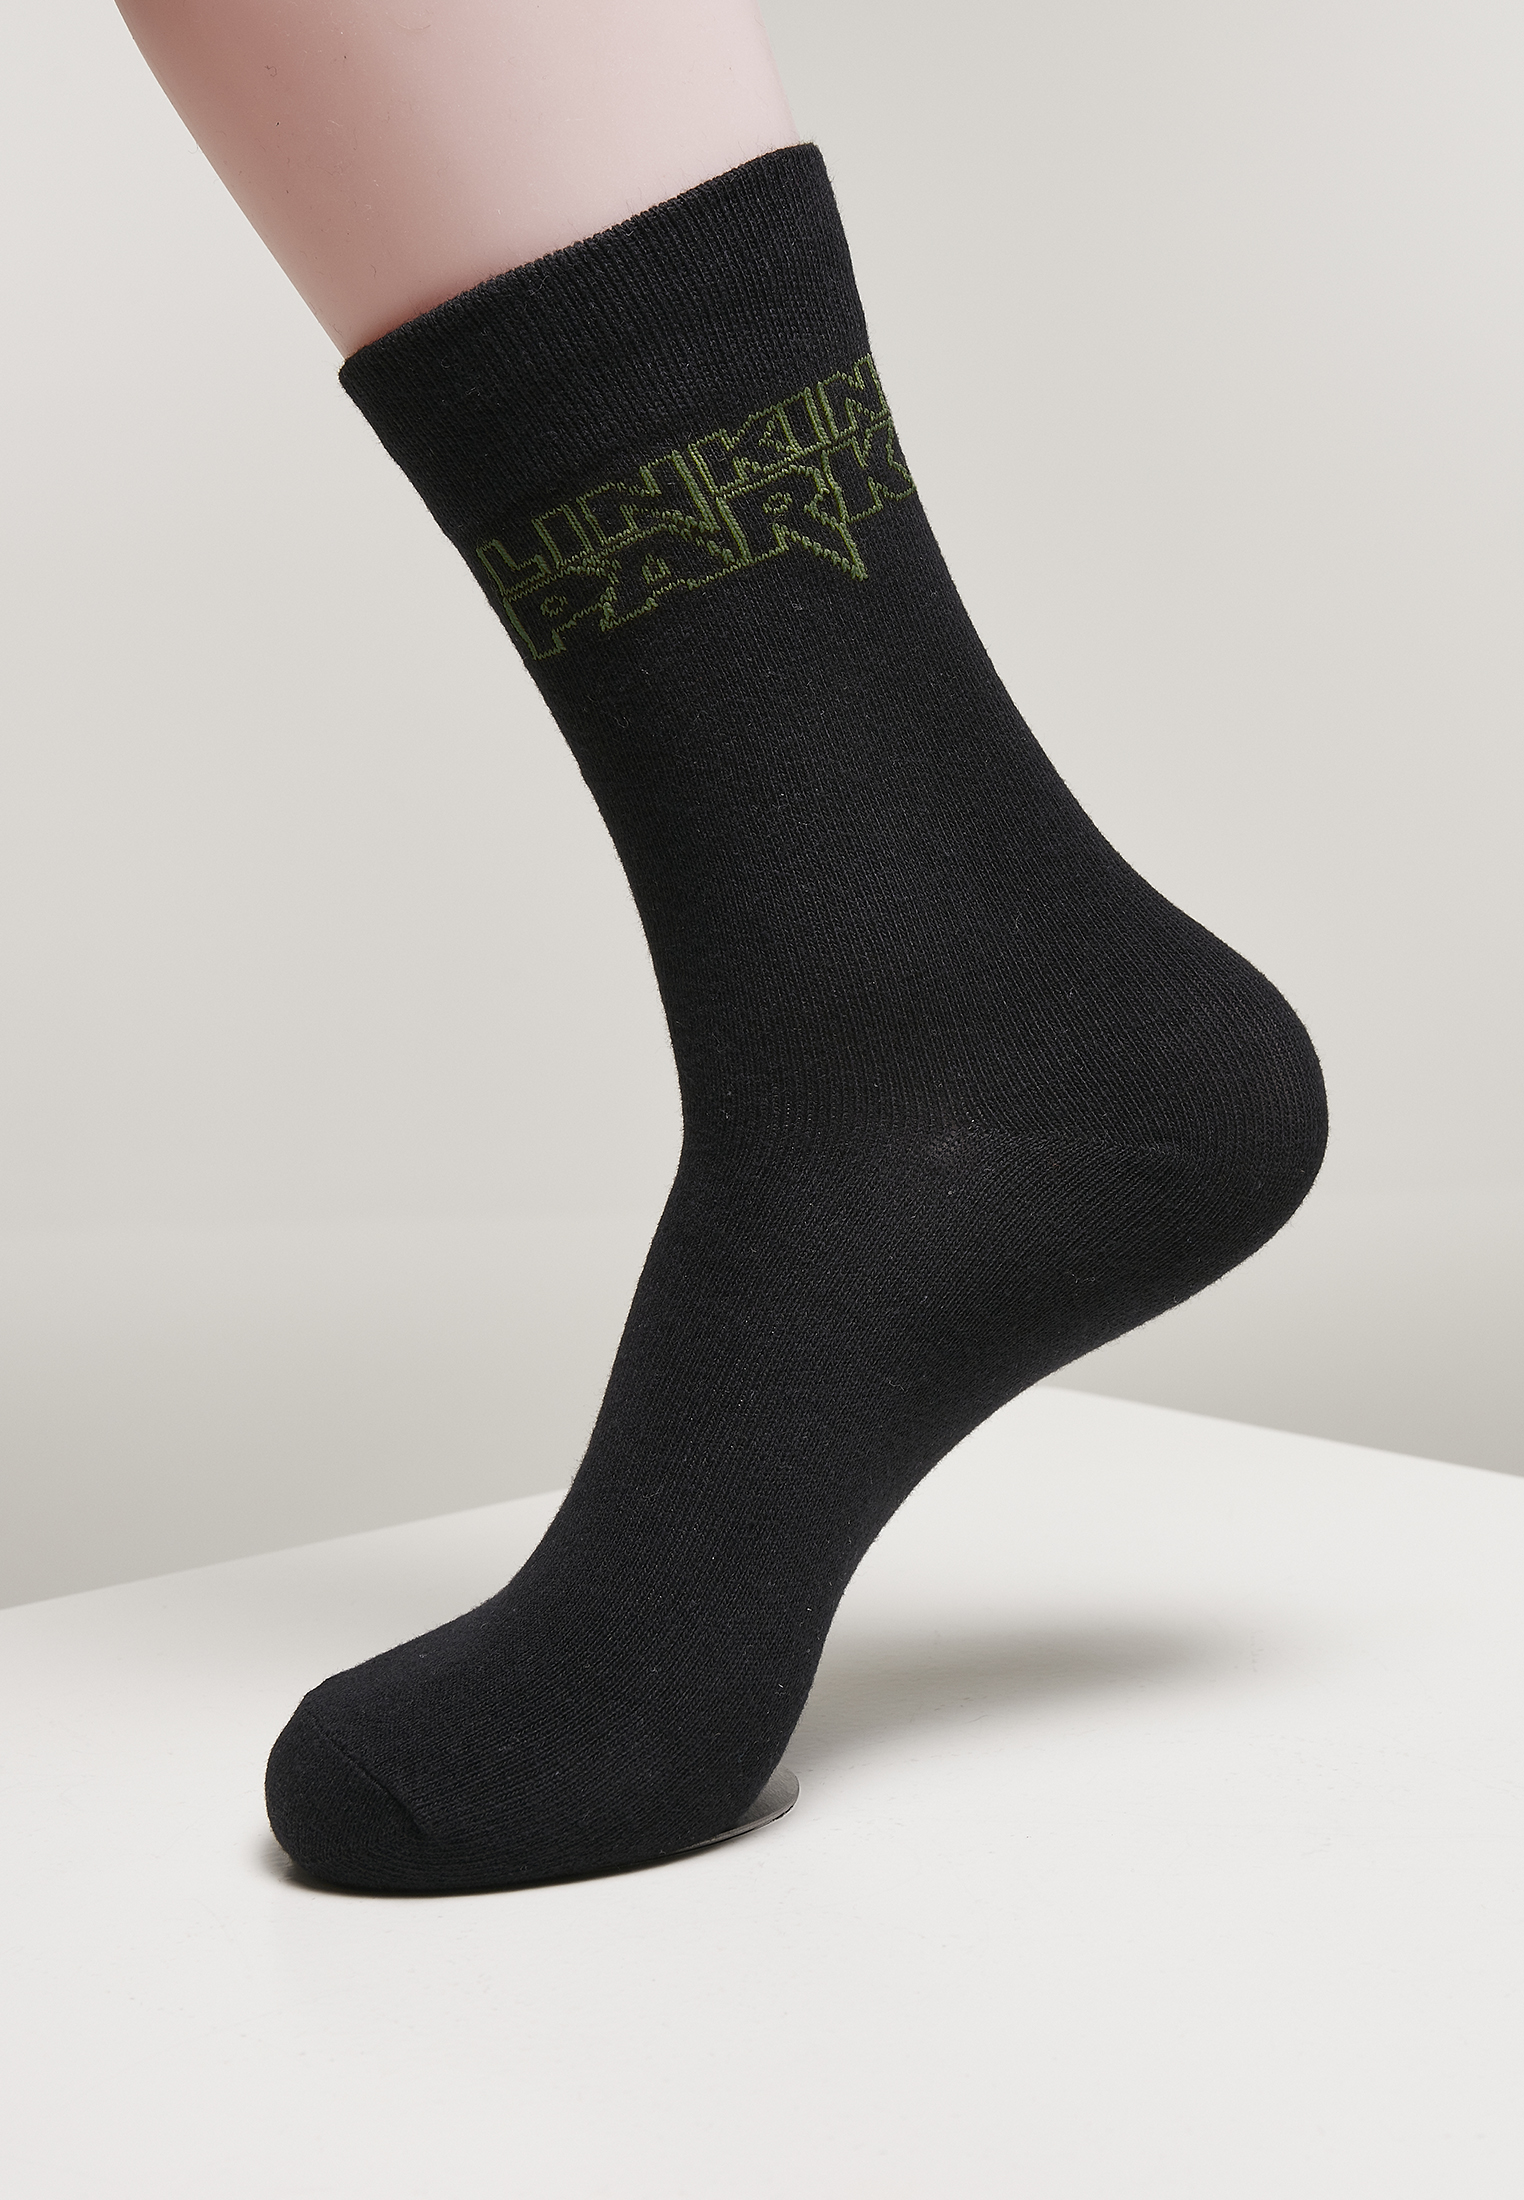 Socken Linkin Park Socks 2-Pack in Farbe black/white